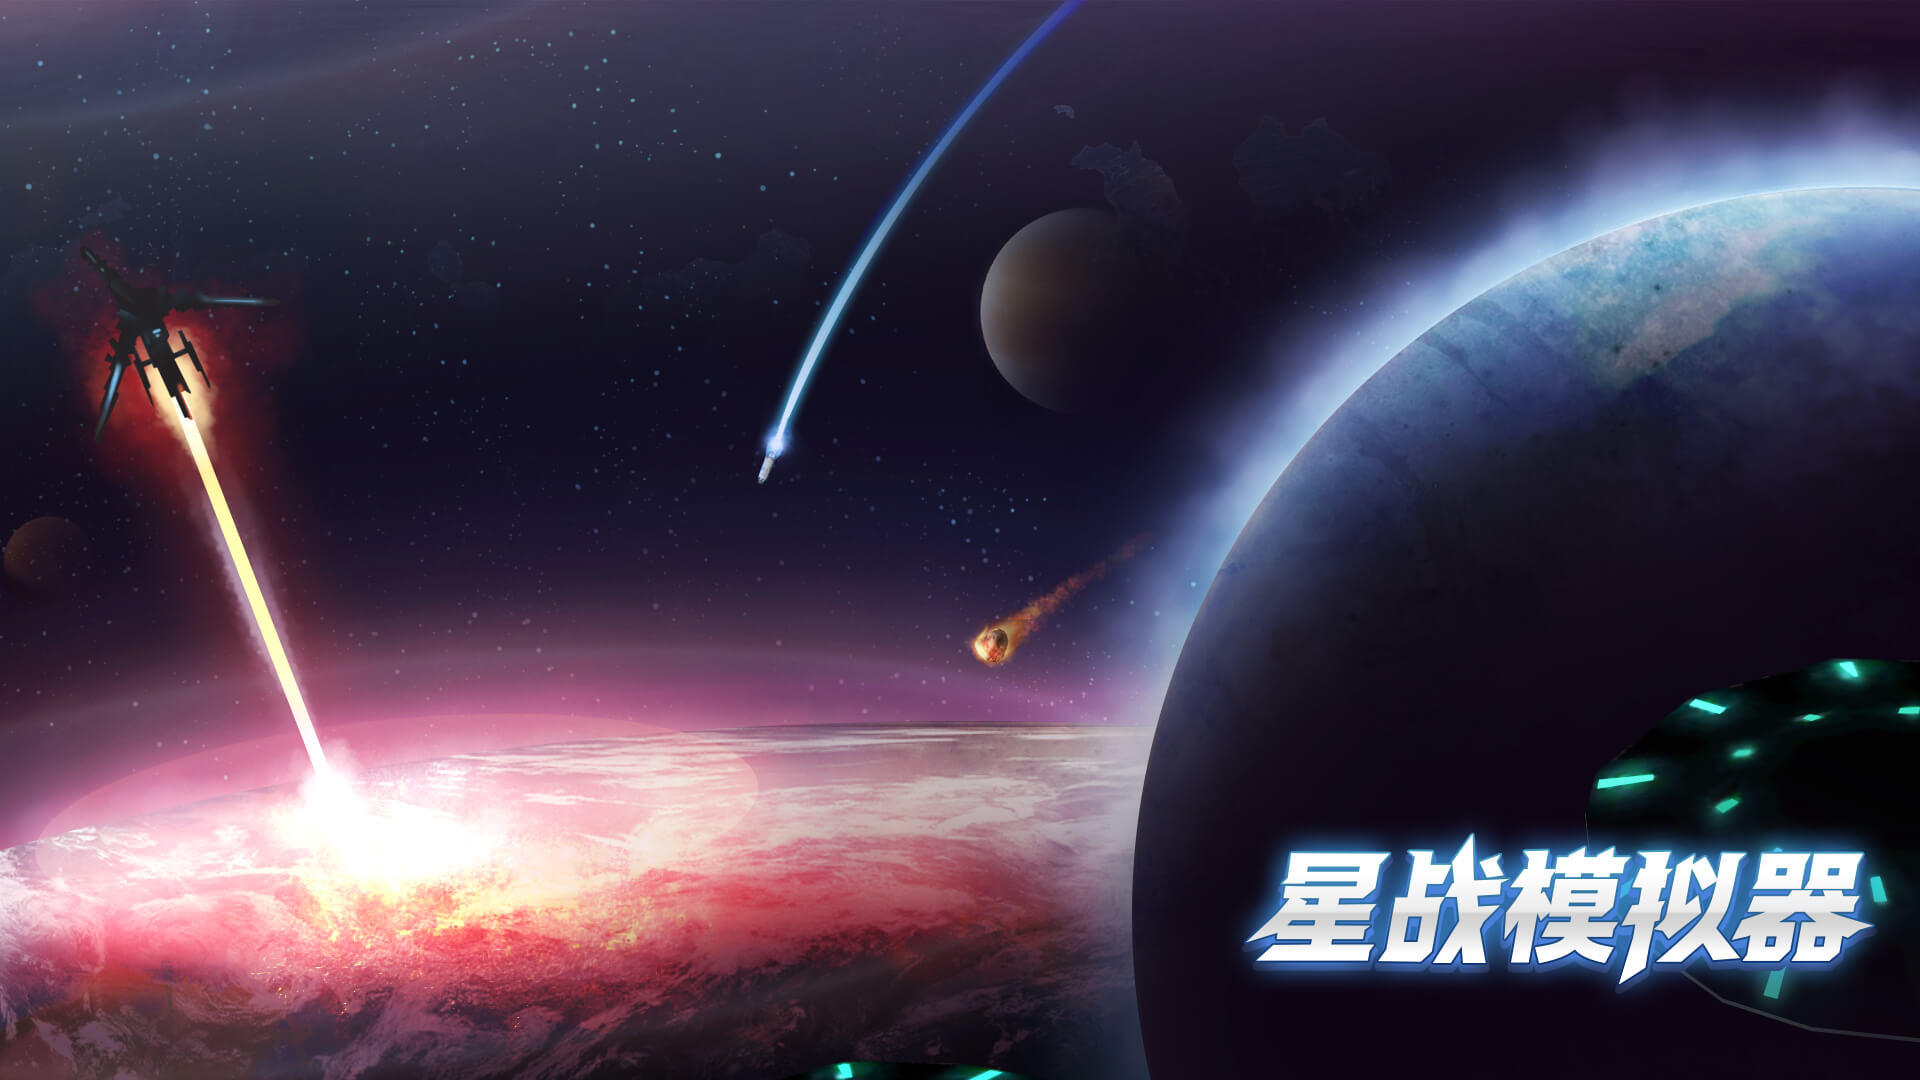 Banner of simulator ng star wars 